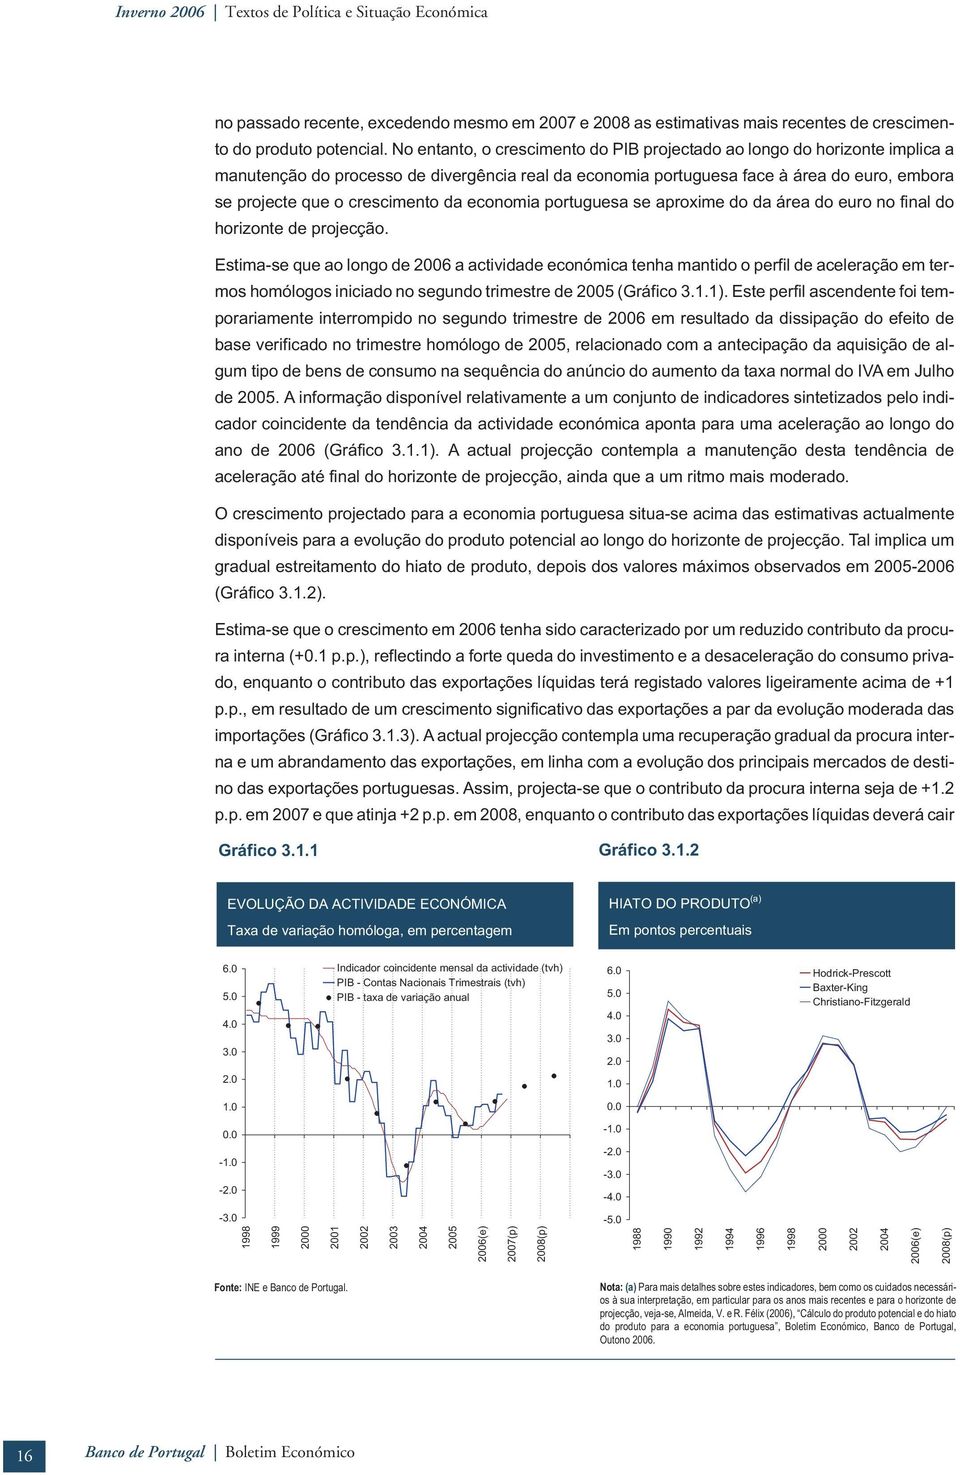 economia poruguesa se aproxime do da área do euro no final do horizone de projecção.